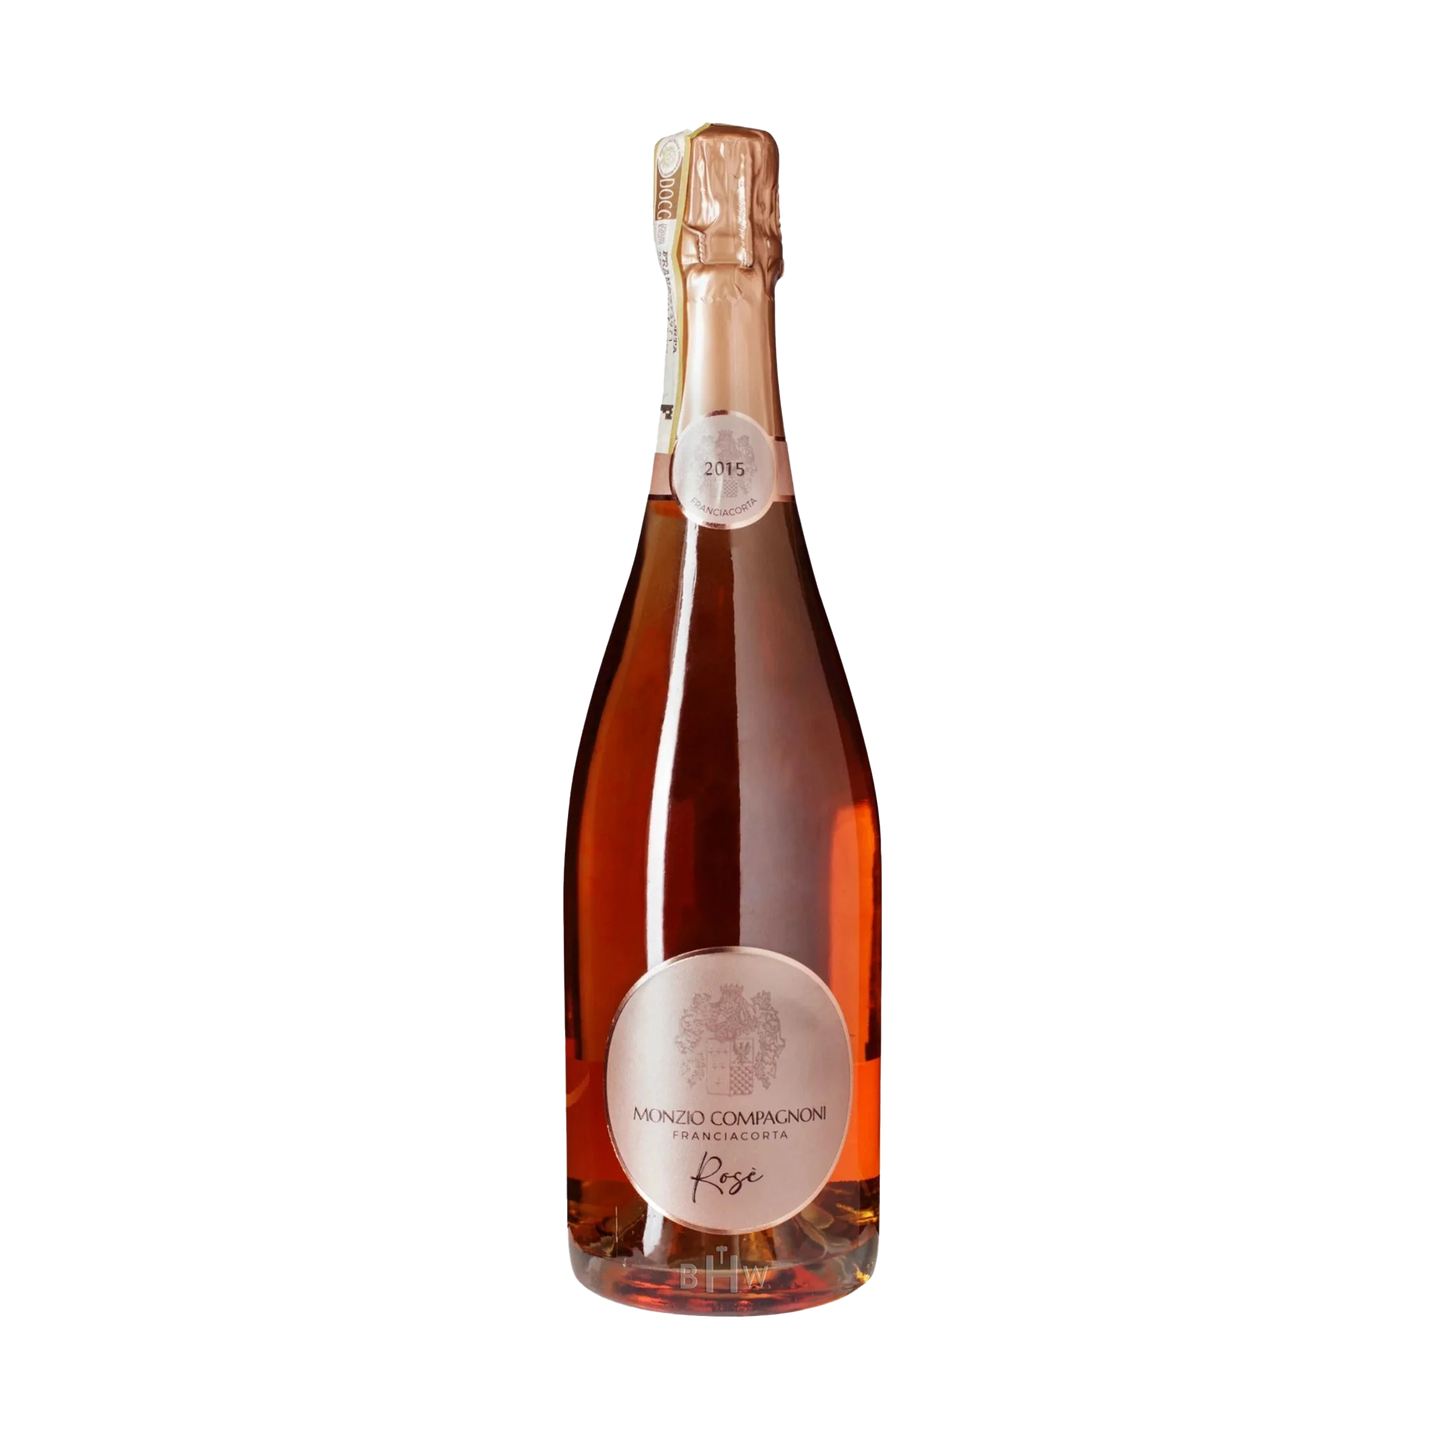 A bottle of Monzio Compagnoni 2015 Brut Rose